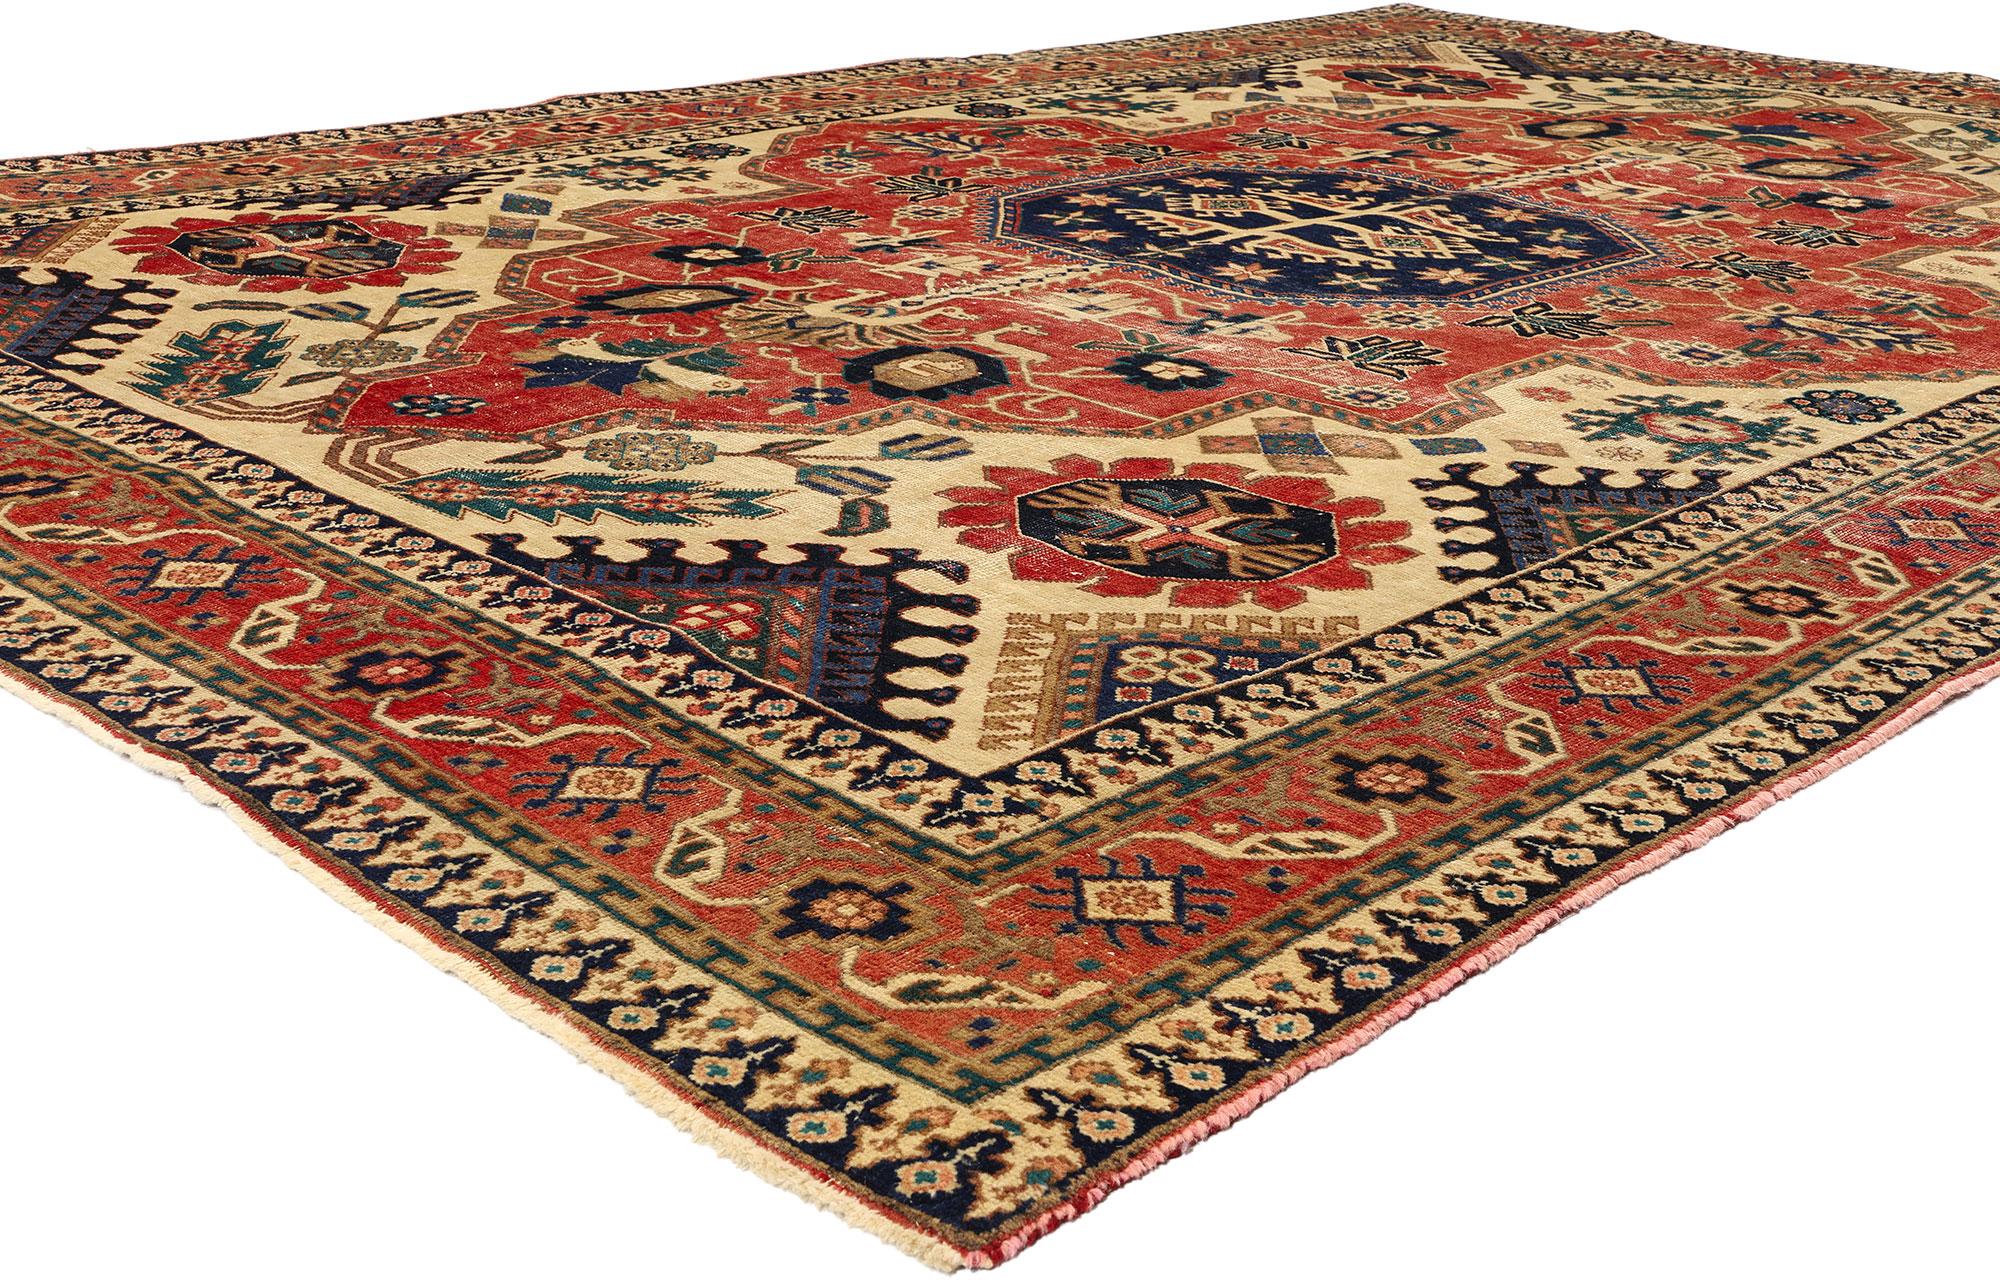 78714 Vintage Persian Ardabil Rug, 07'01 x 10'04. Persische Ardabil-Teppiche, die aus der Stadt Ardabil im Iran stammen, sind bekannt für ihre komplizierten Designs, ihre feine Handwerkskunst und ihre hohe Qualität. Diese handgefertigten Teppiche